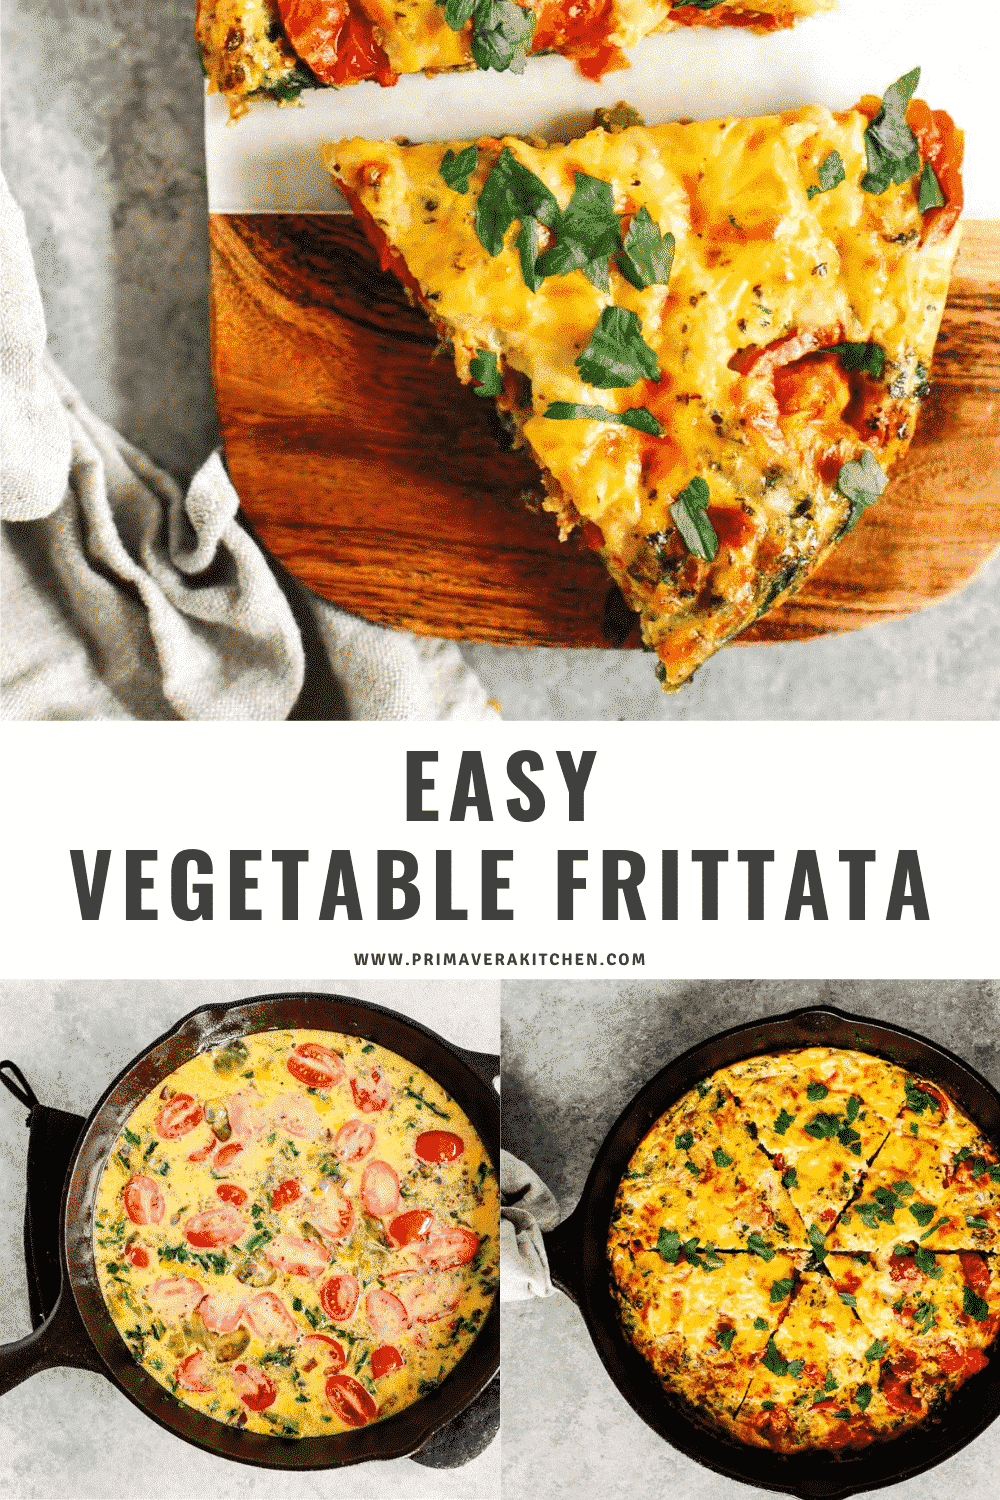 Easy vegetable frittata